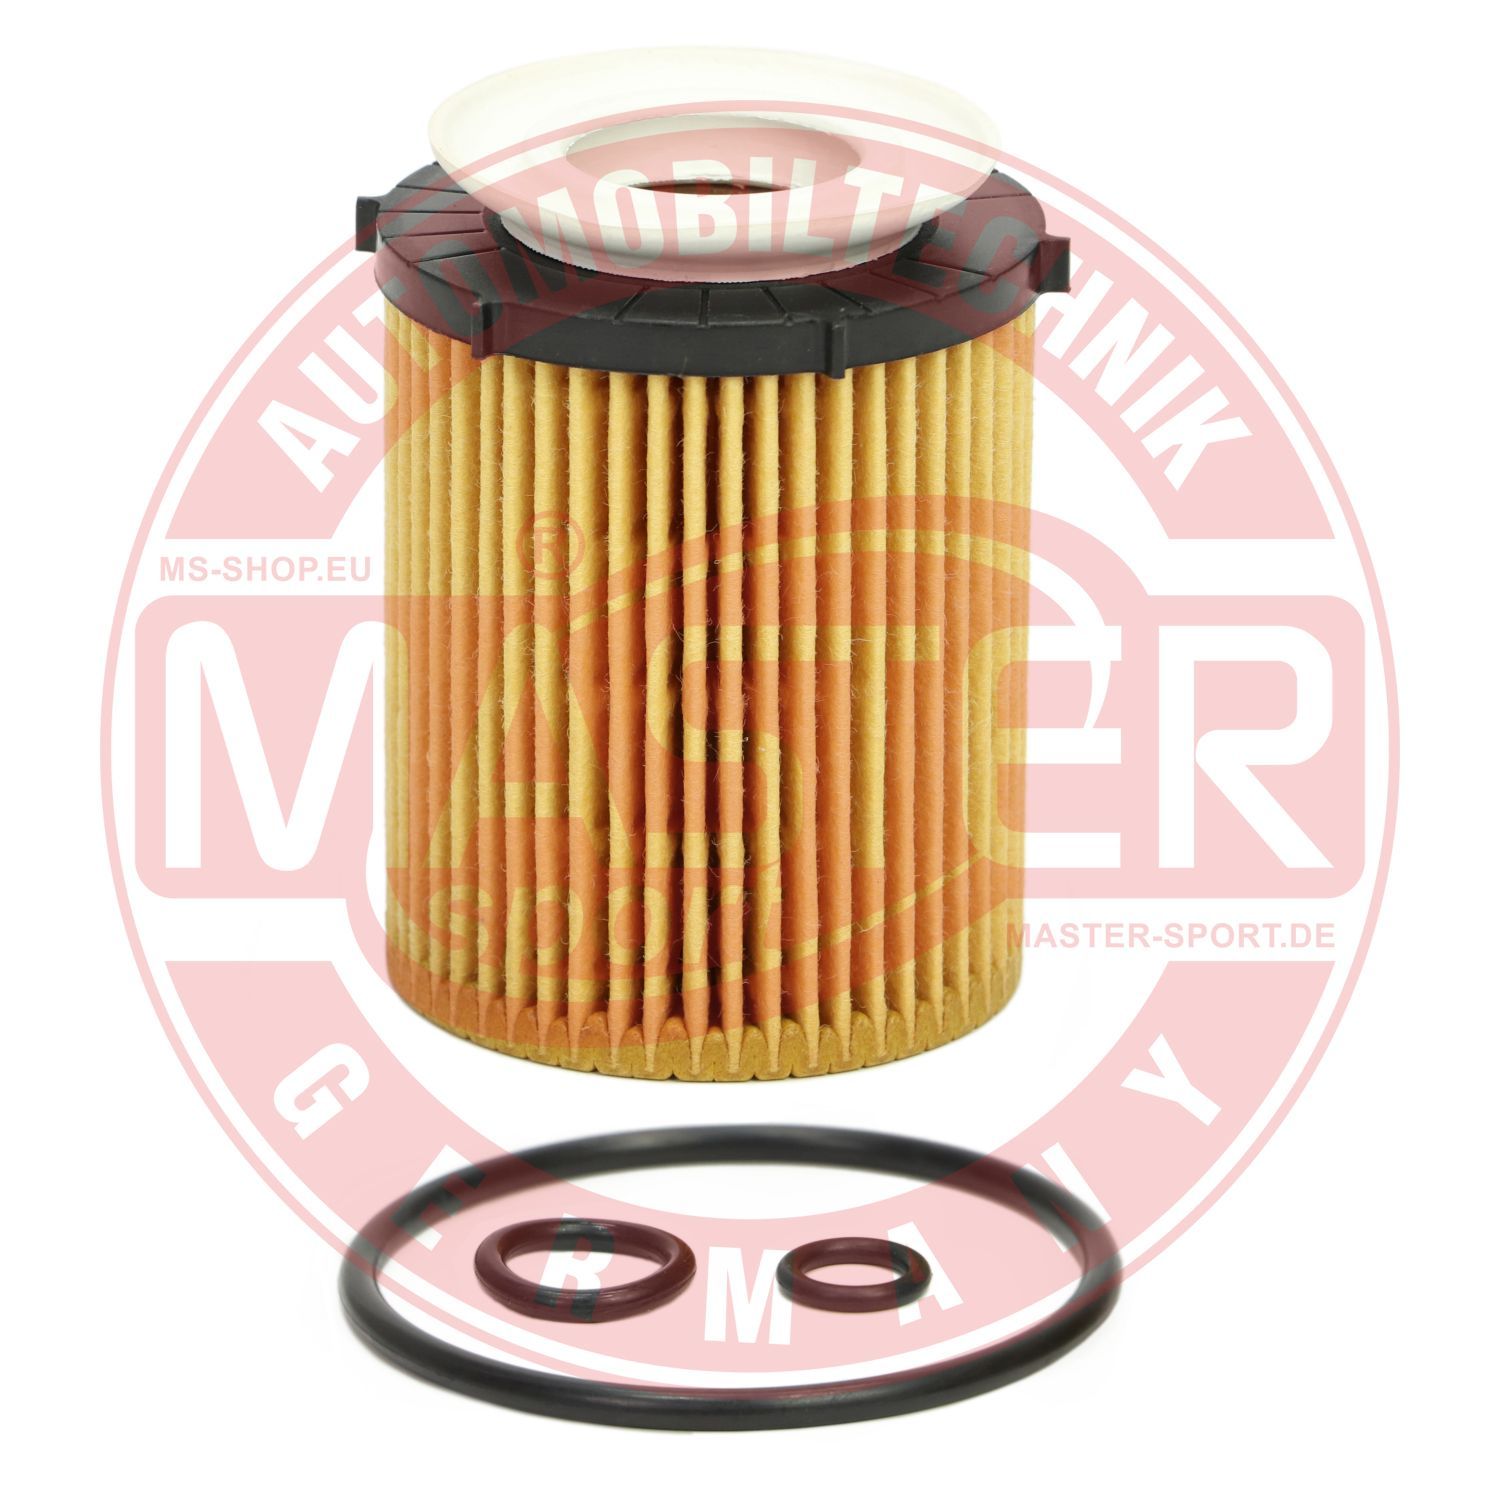 Obrázok Olejový filter MASTER-SPORT GERMANY  7116ZOFPCSMS